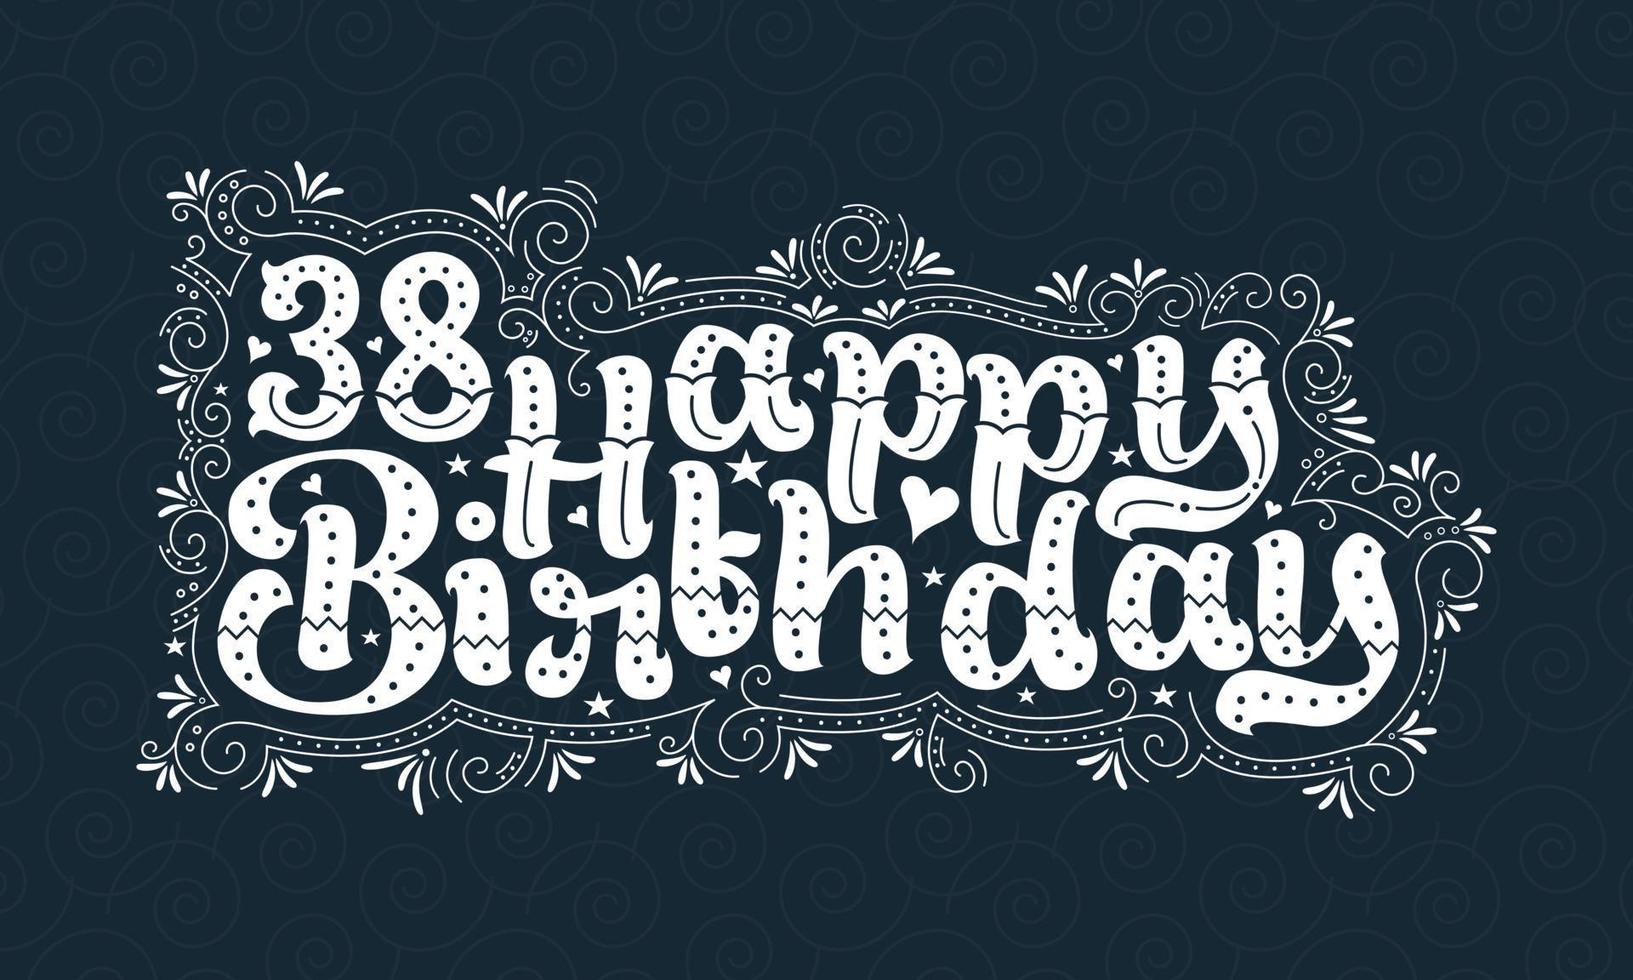 38:e grattis på födelsedagen bokstäver, 38 års födelsedag vacker typografidesign med prickar, linjer och löv. vektor